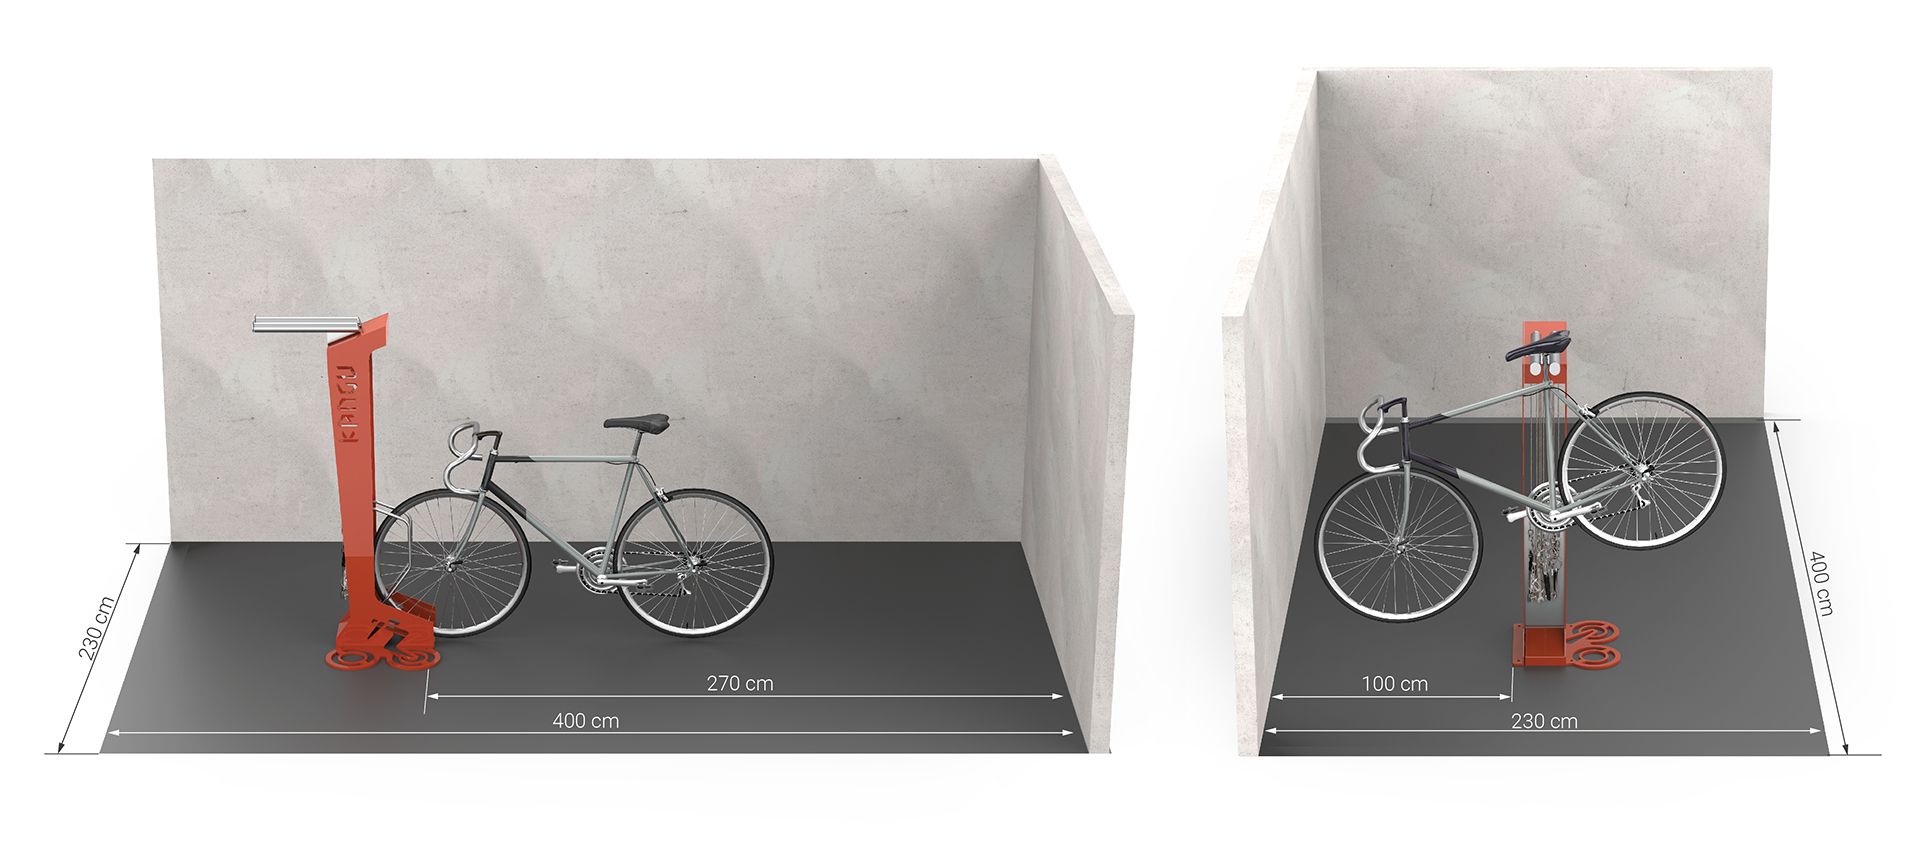 Dimensjoner som trengs for å montere Kangu sykkelstasjon